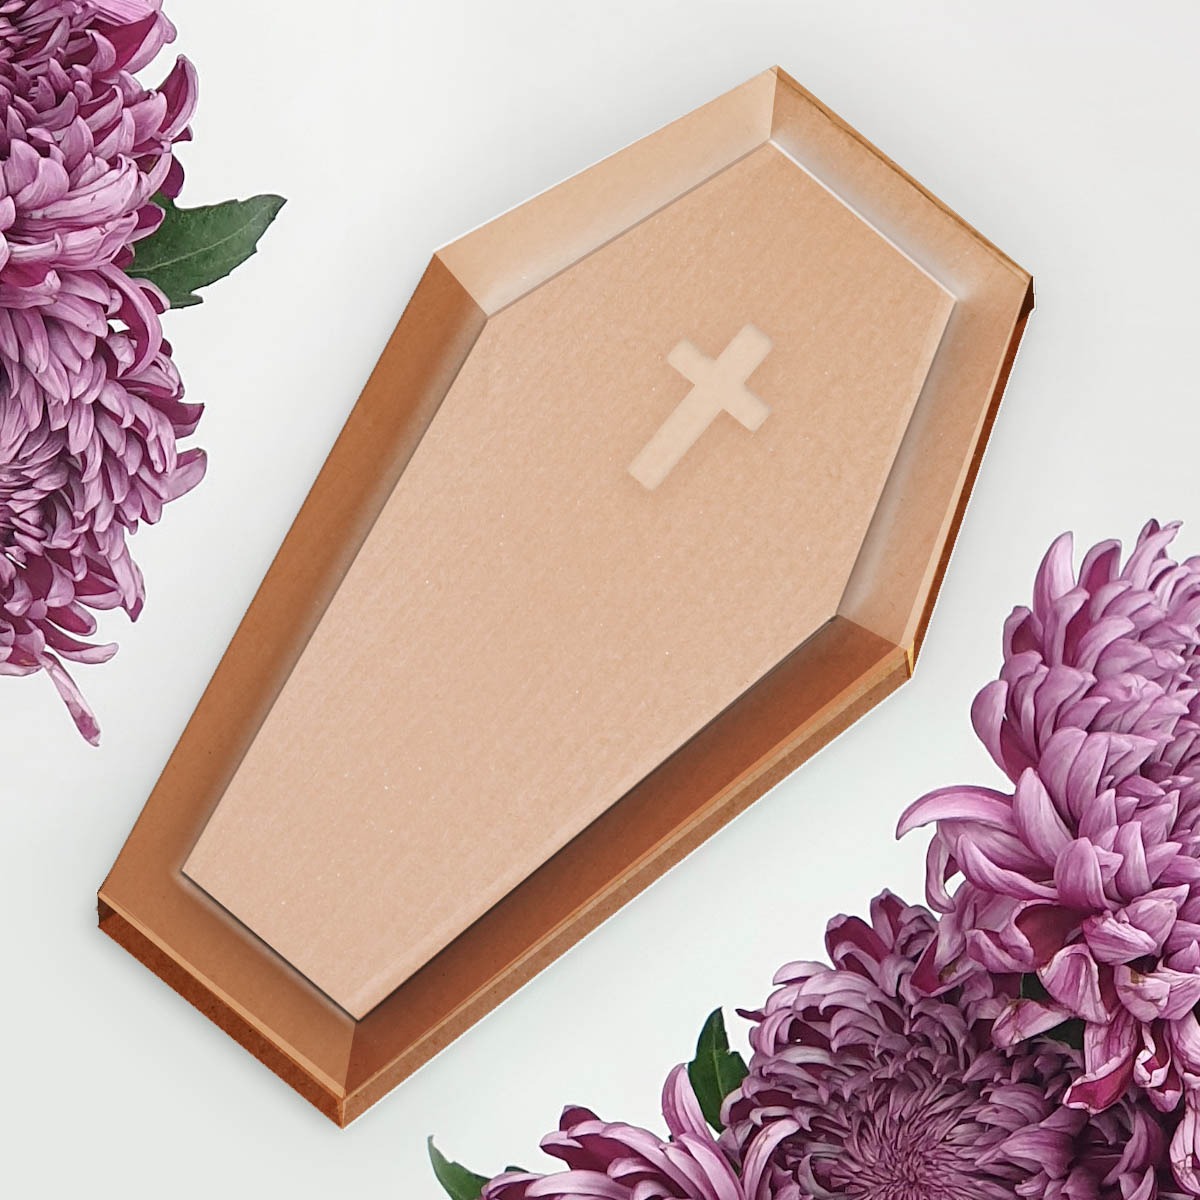 Cercueil en carton : choix du type de cercueil, pour la crémation